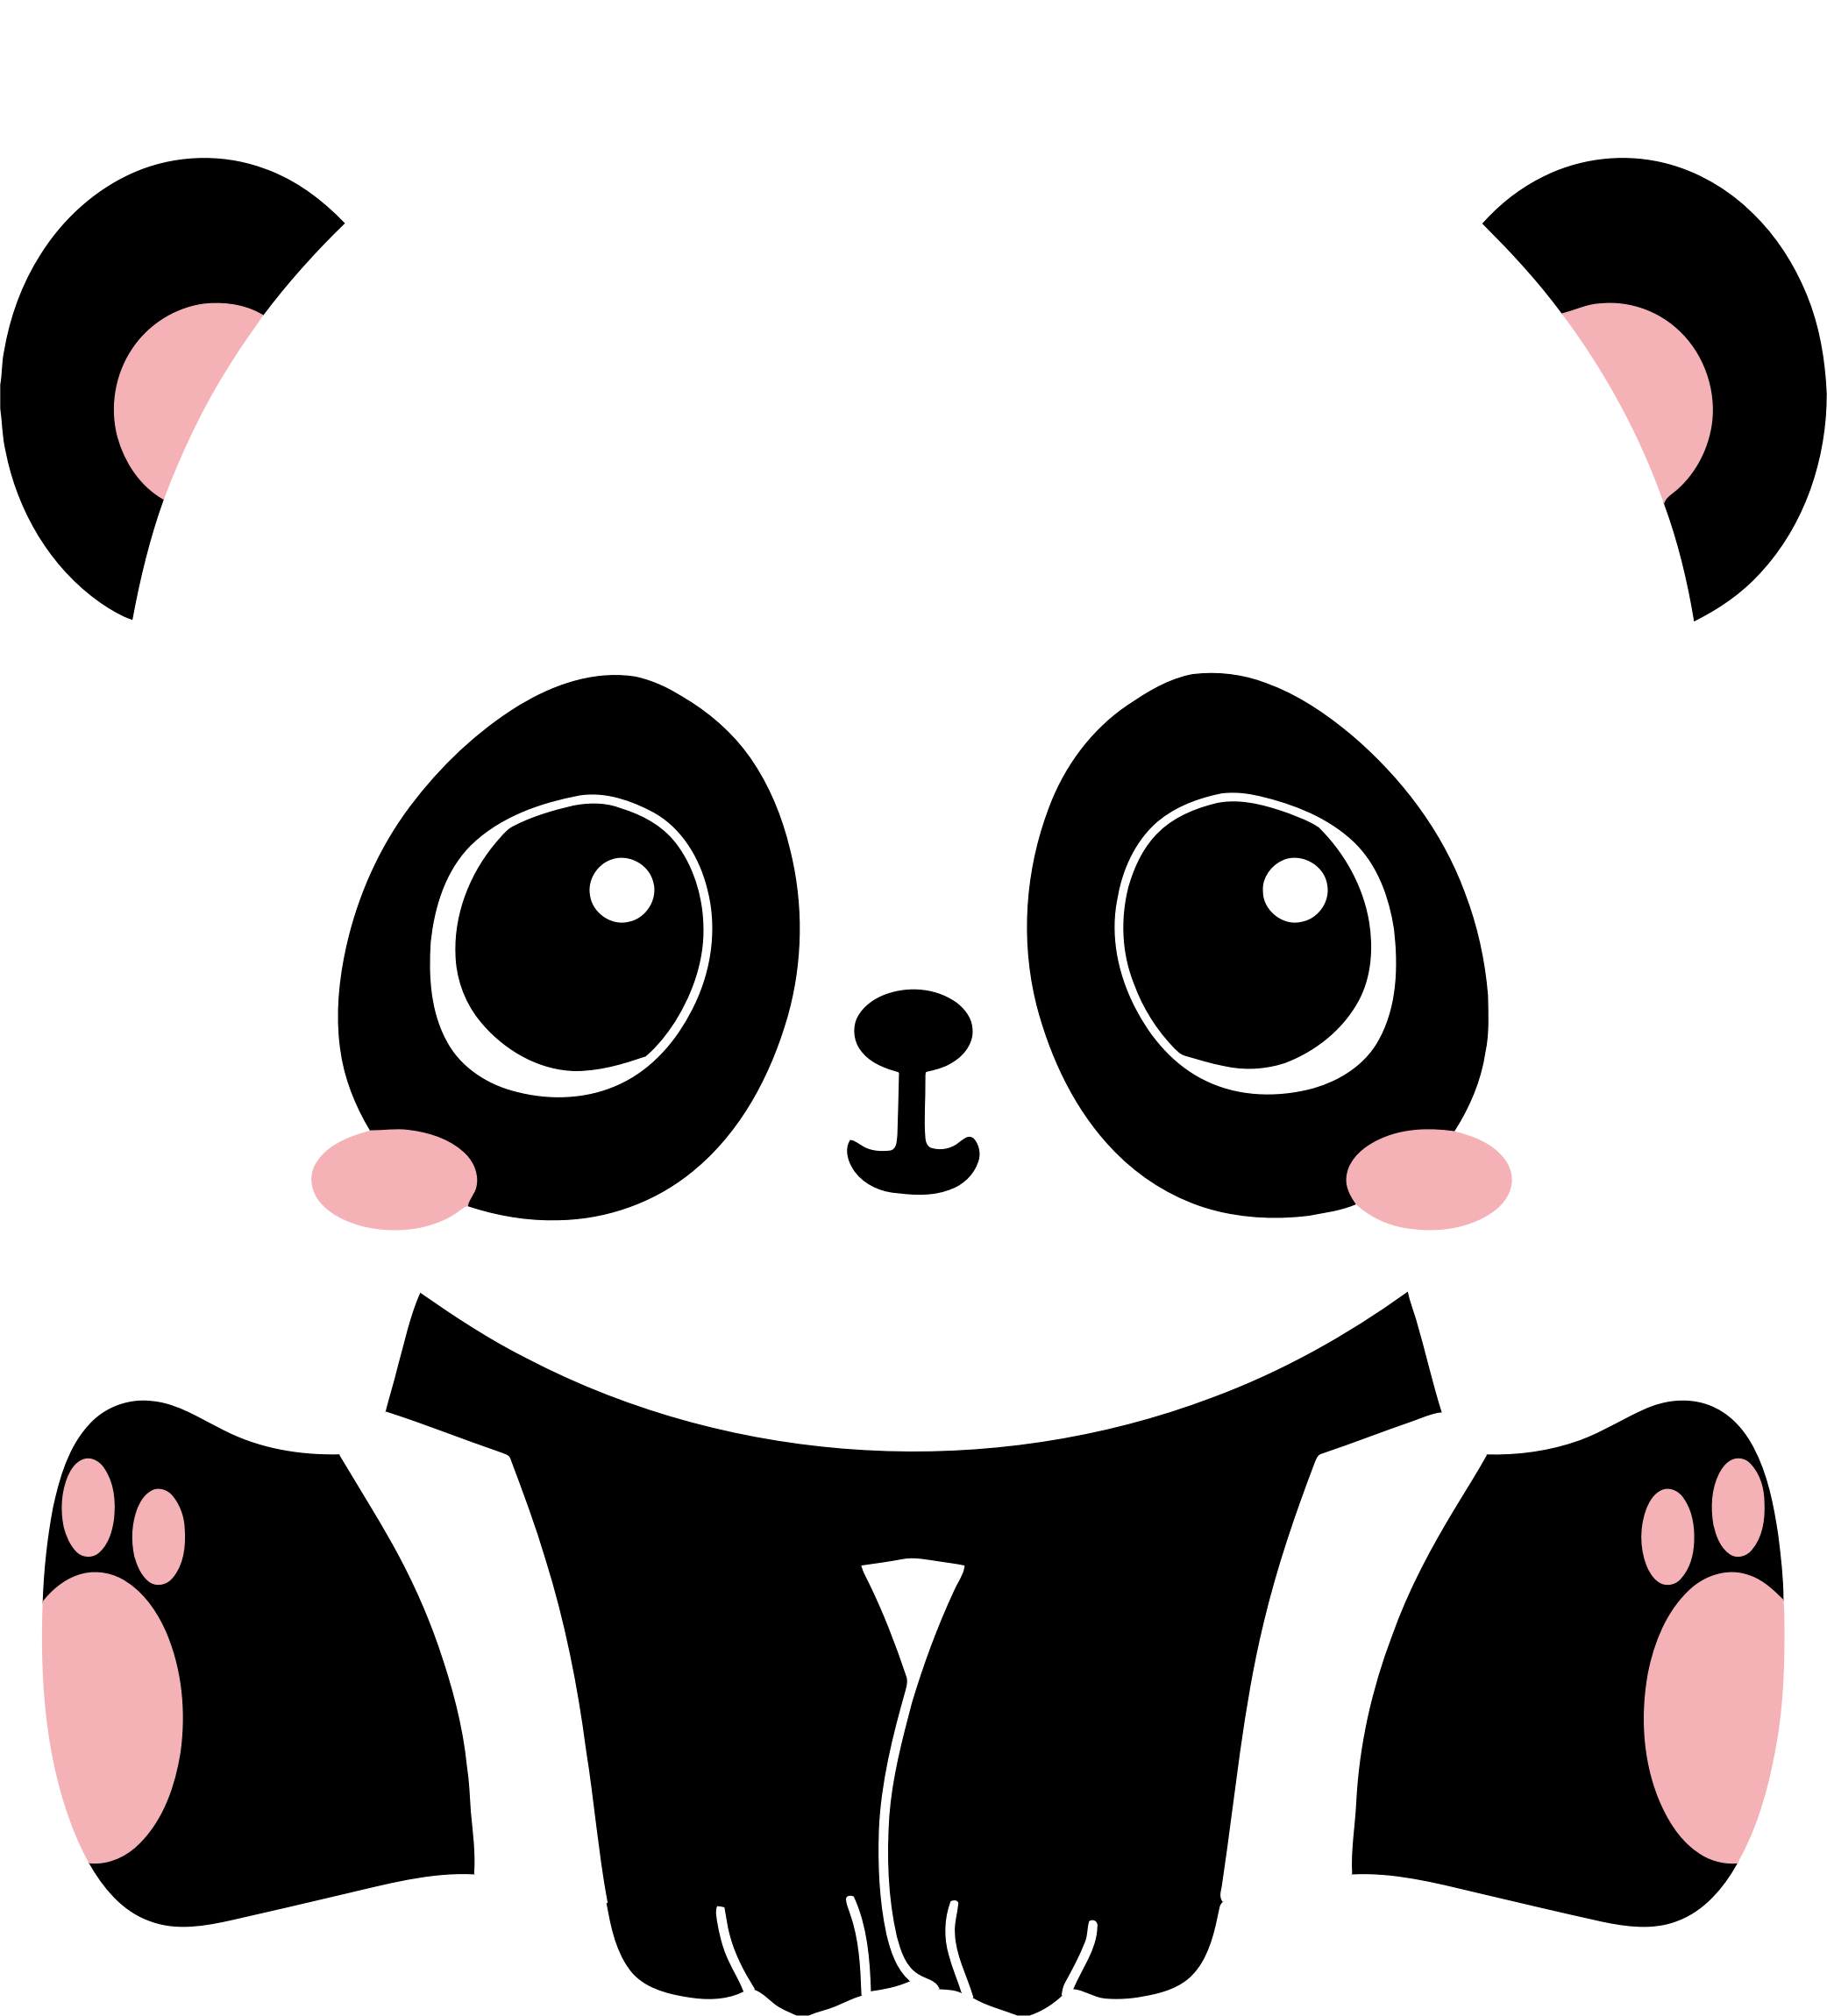 panda clipart cartoon character